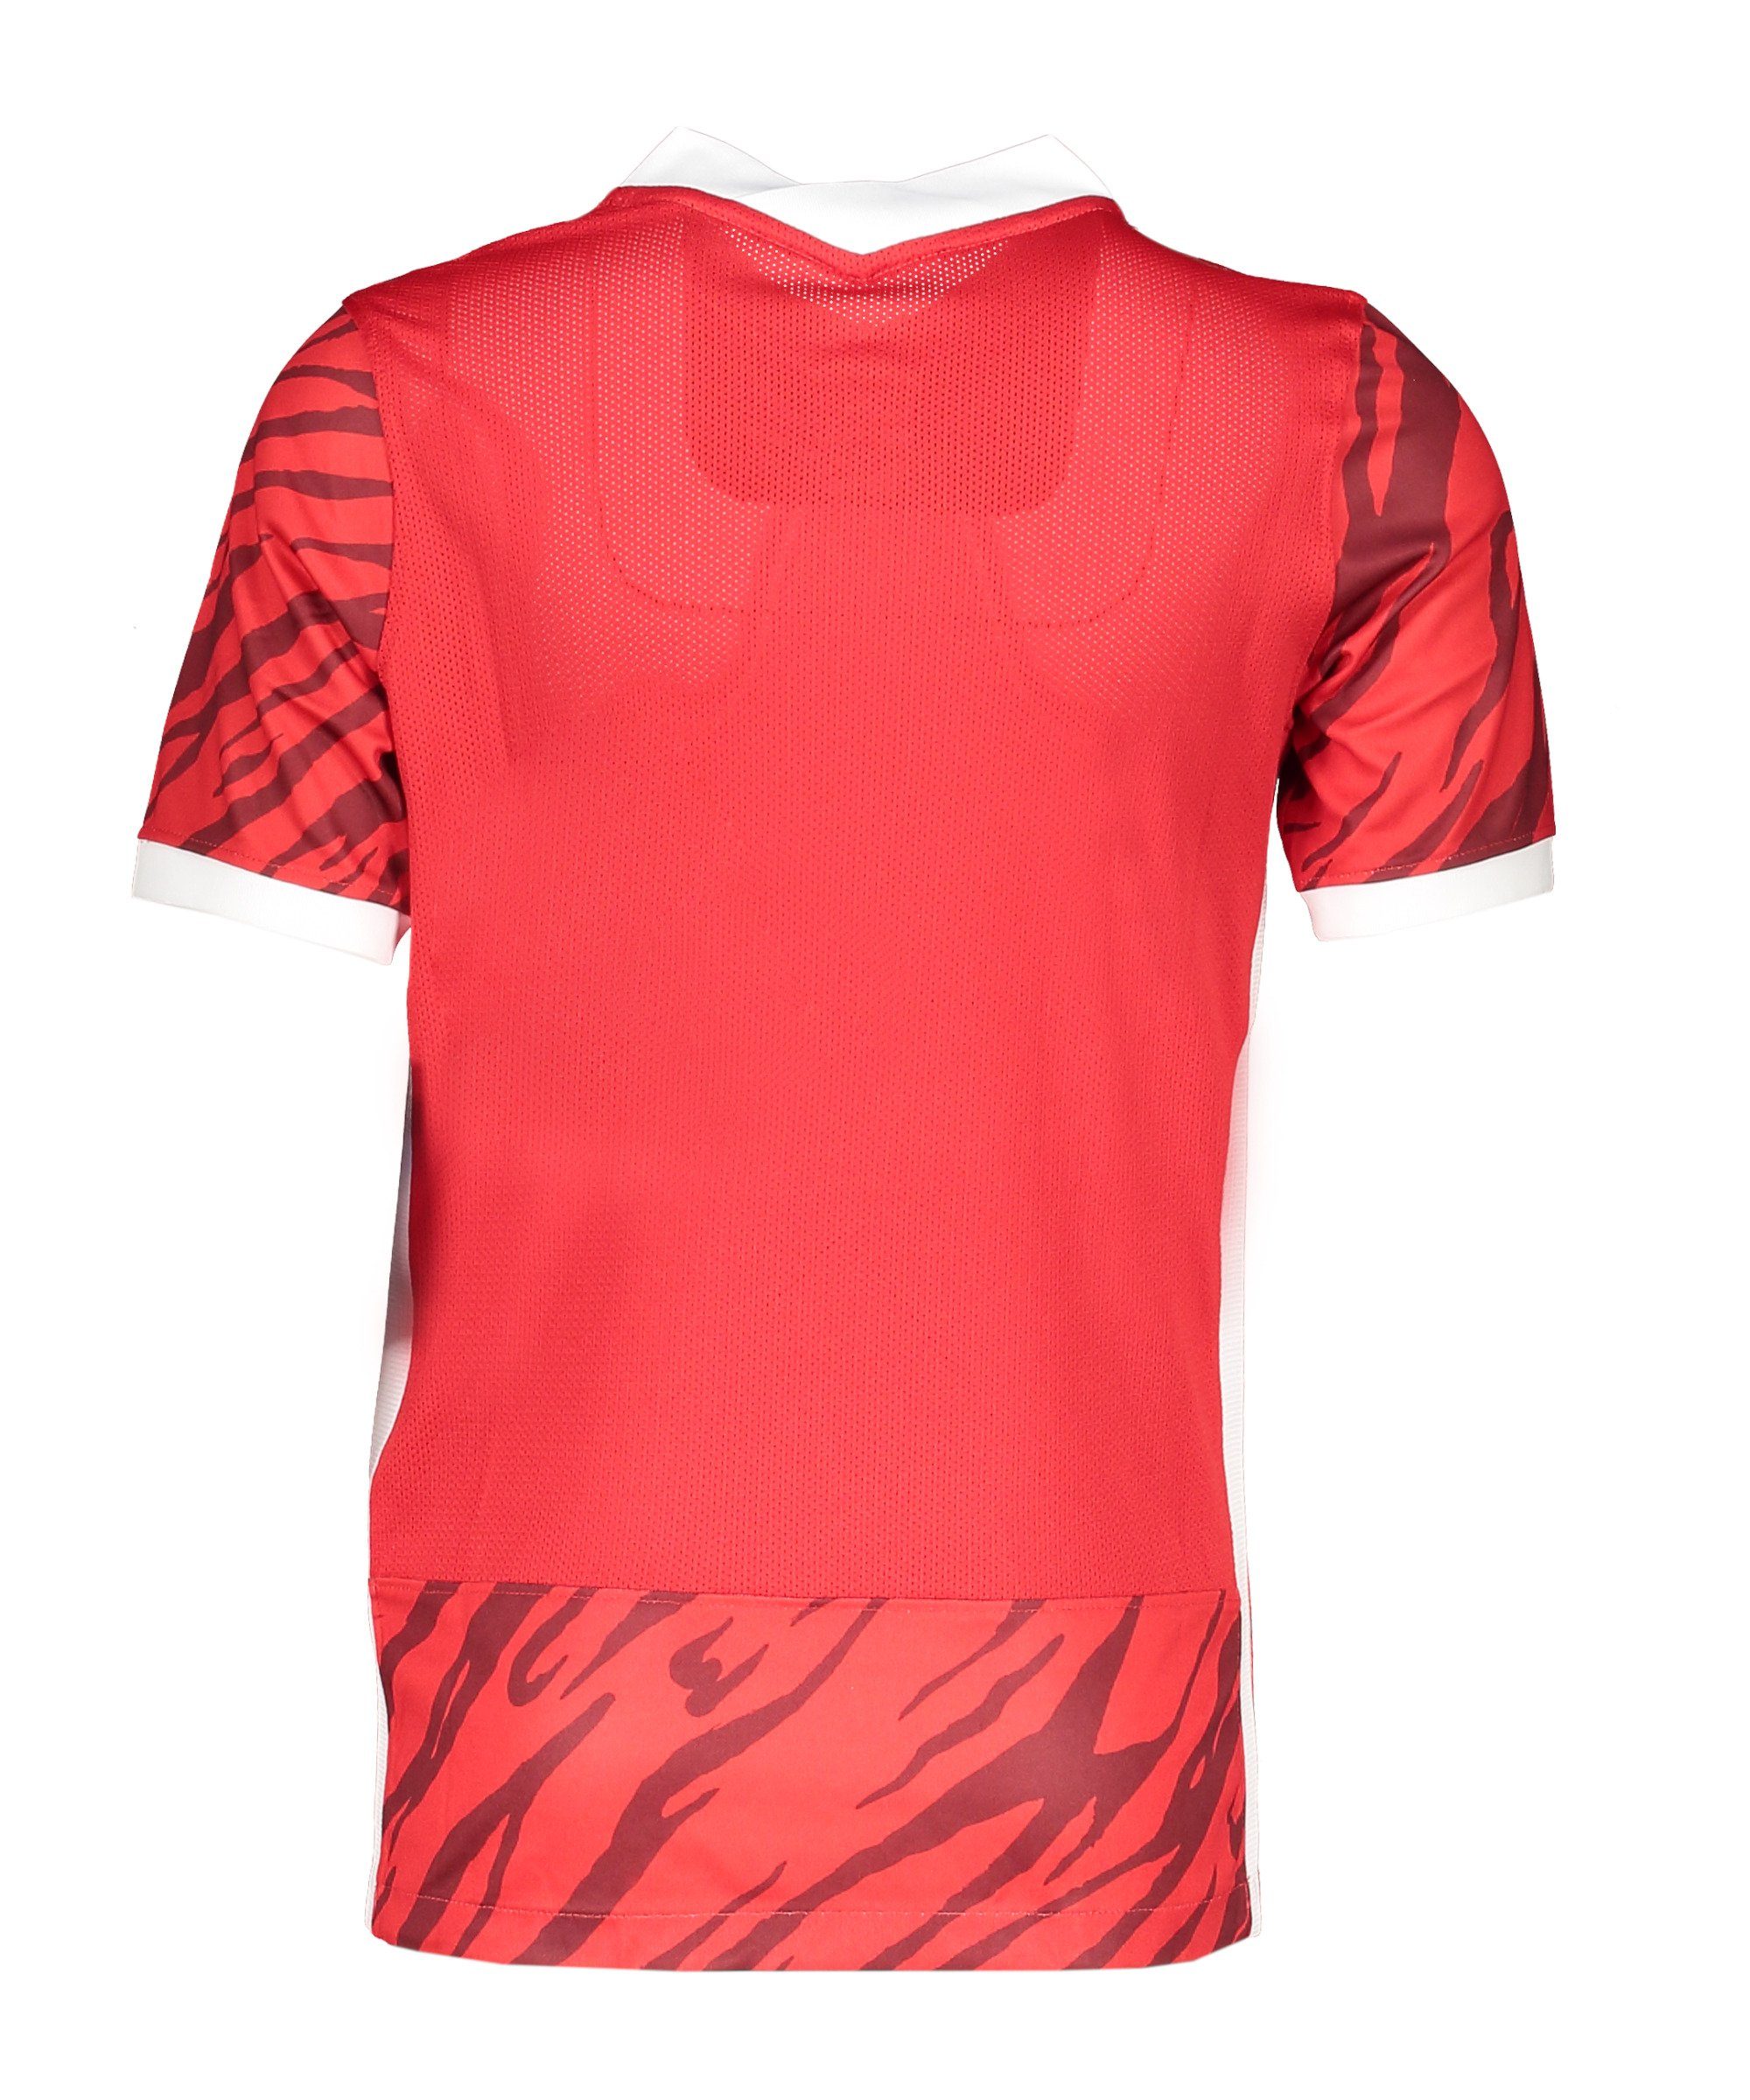 T-Shirt Nike GX2 Dry rotweiss NE Kids default T-Shirt